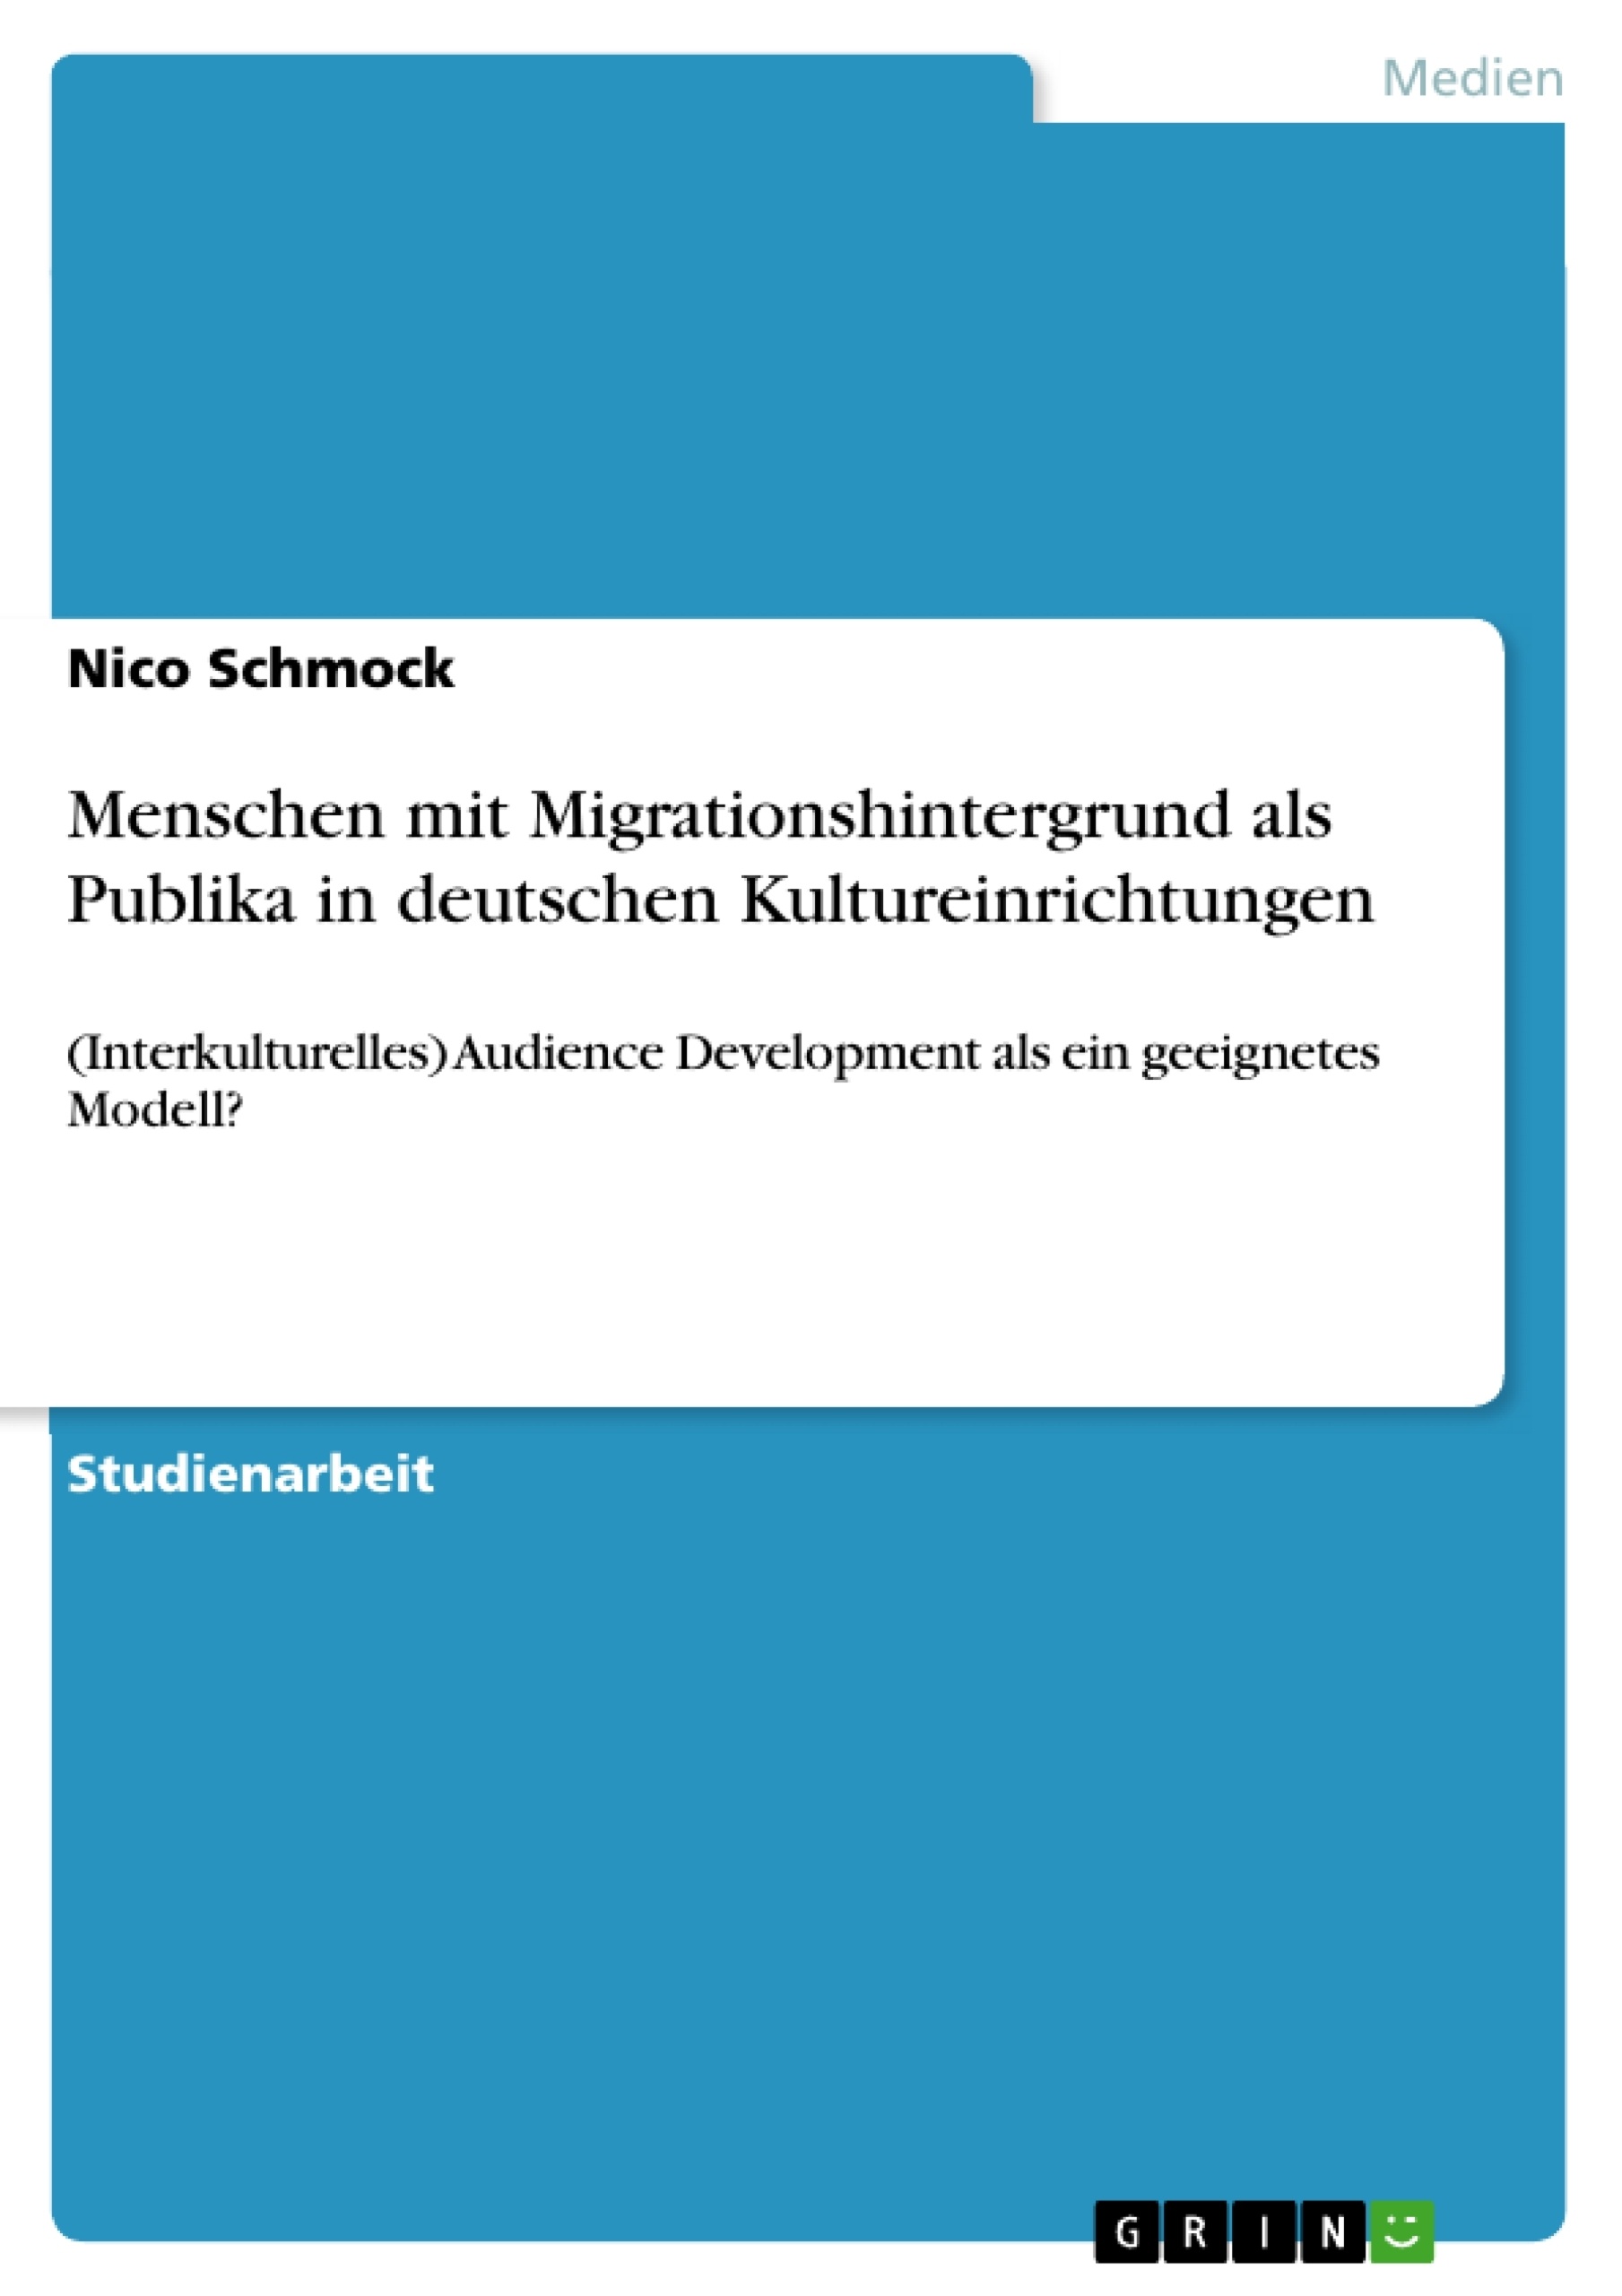 Title: Menschen mit Migrationshintergrund als Publika in deutschen Kultureinrichtungen